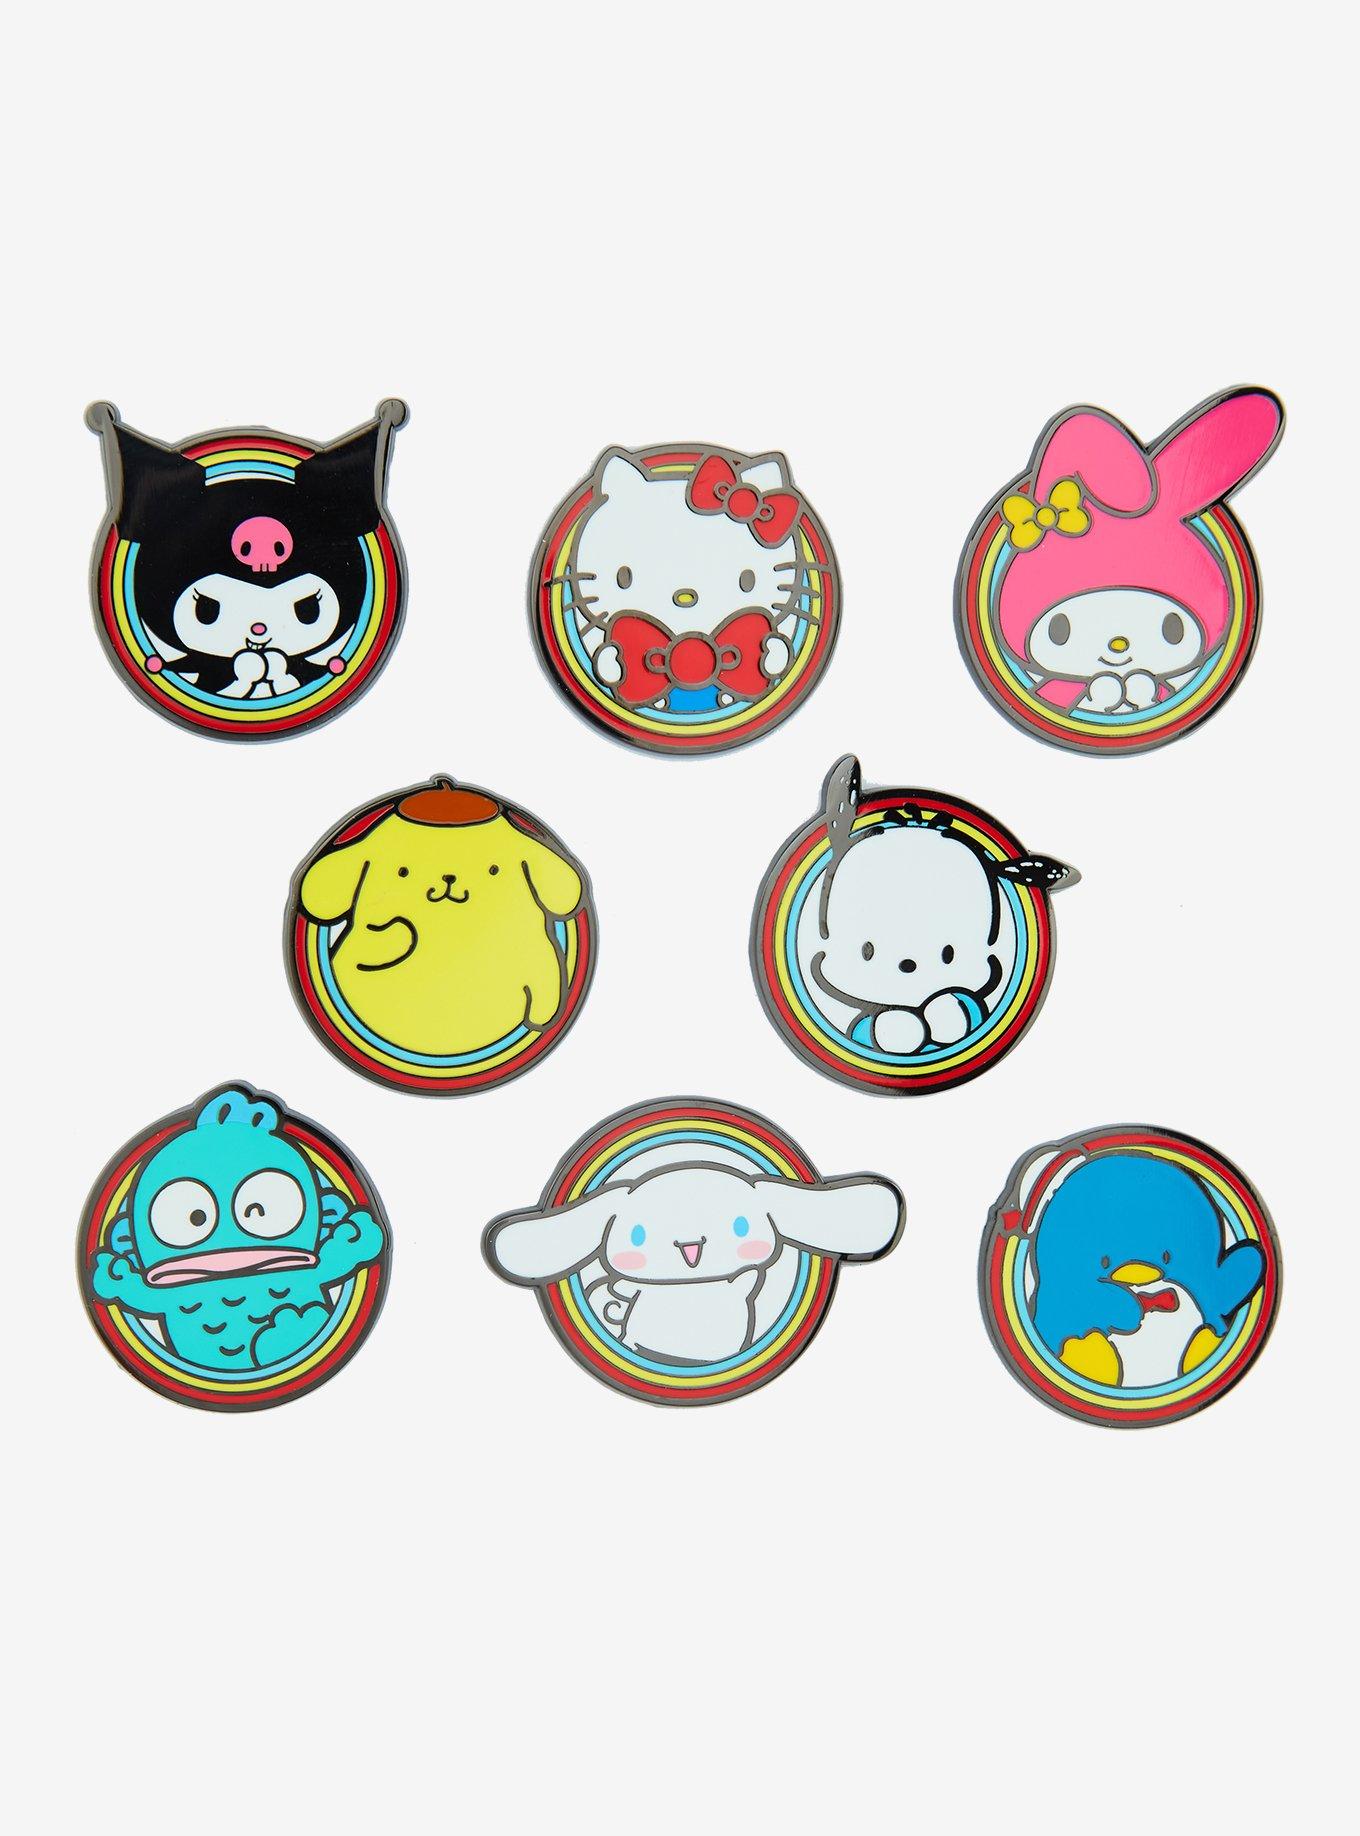 Sanrio Team USA Collectible Pins